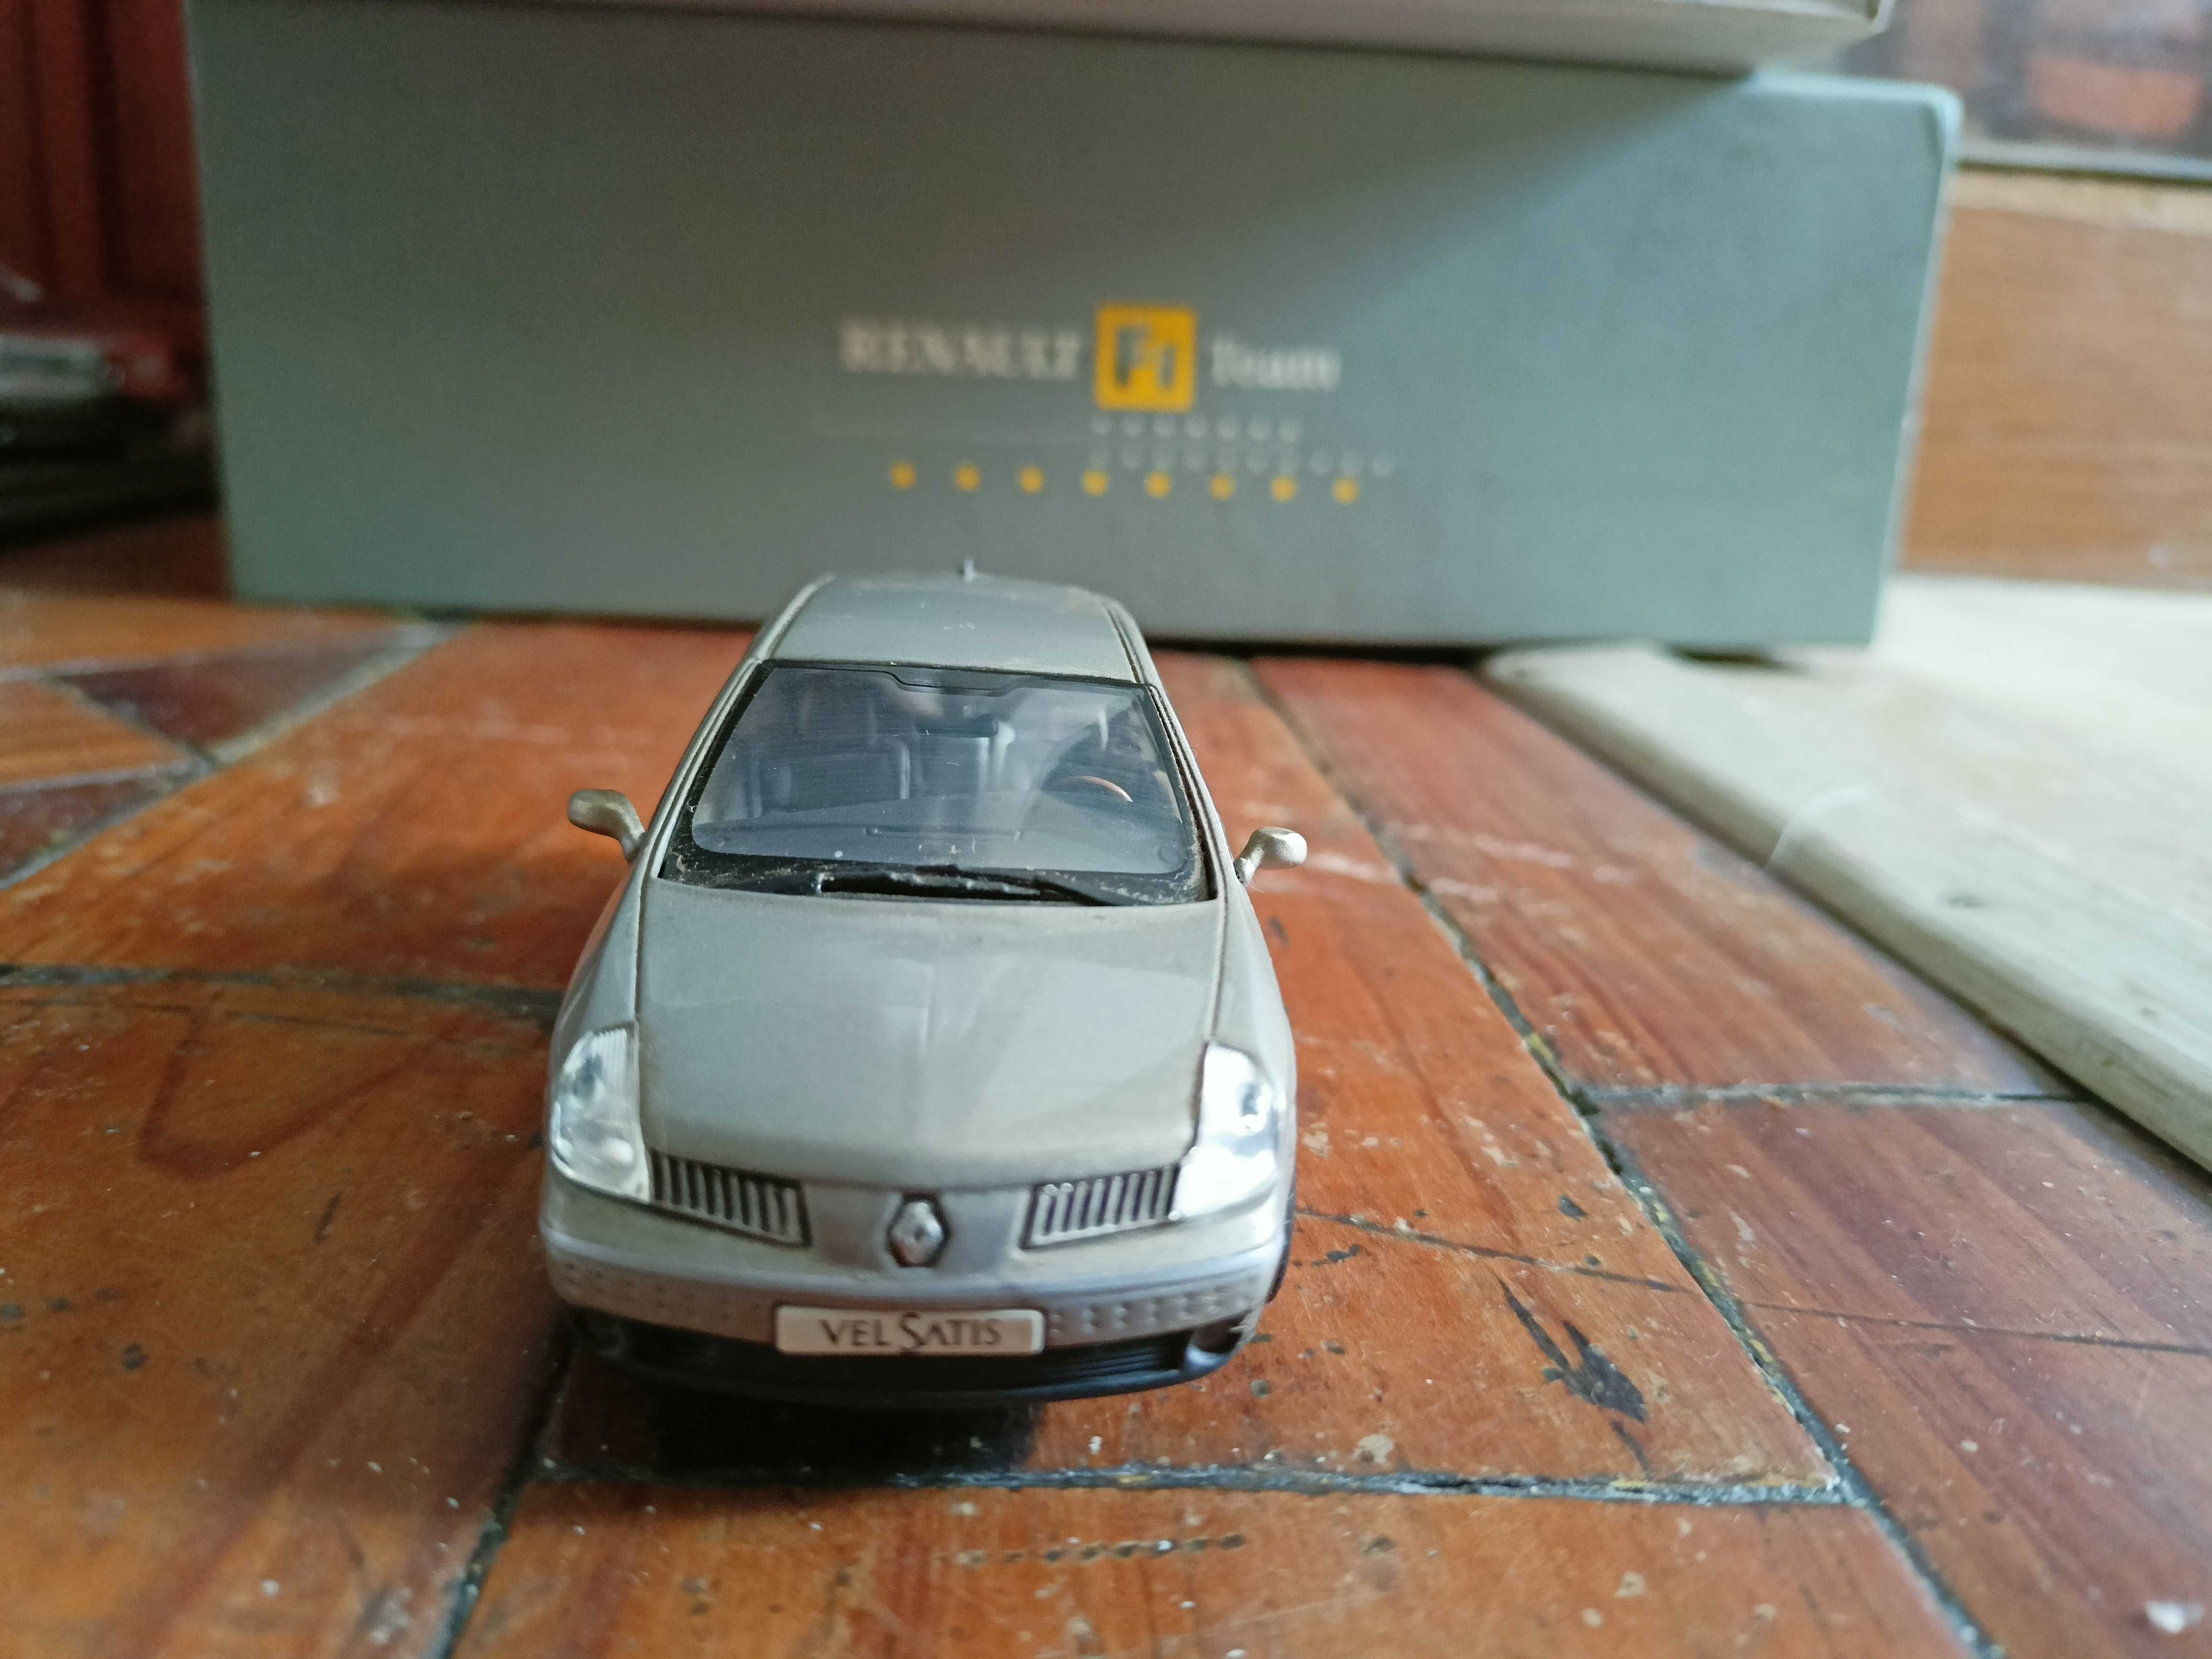 Renault VelSatis V6 1:43